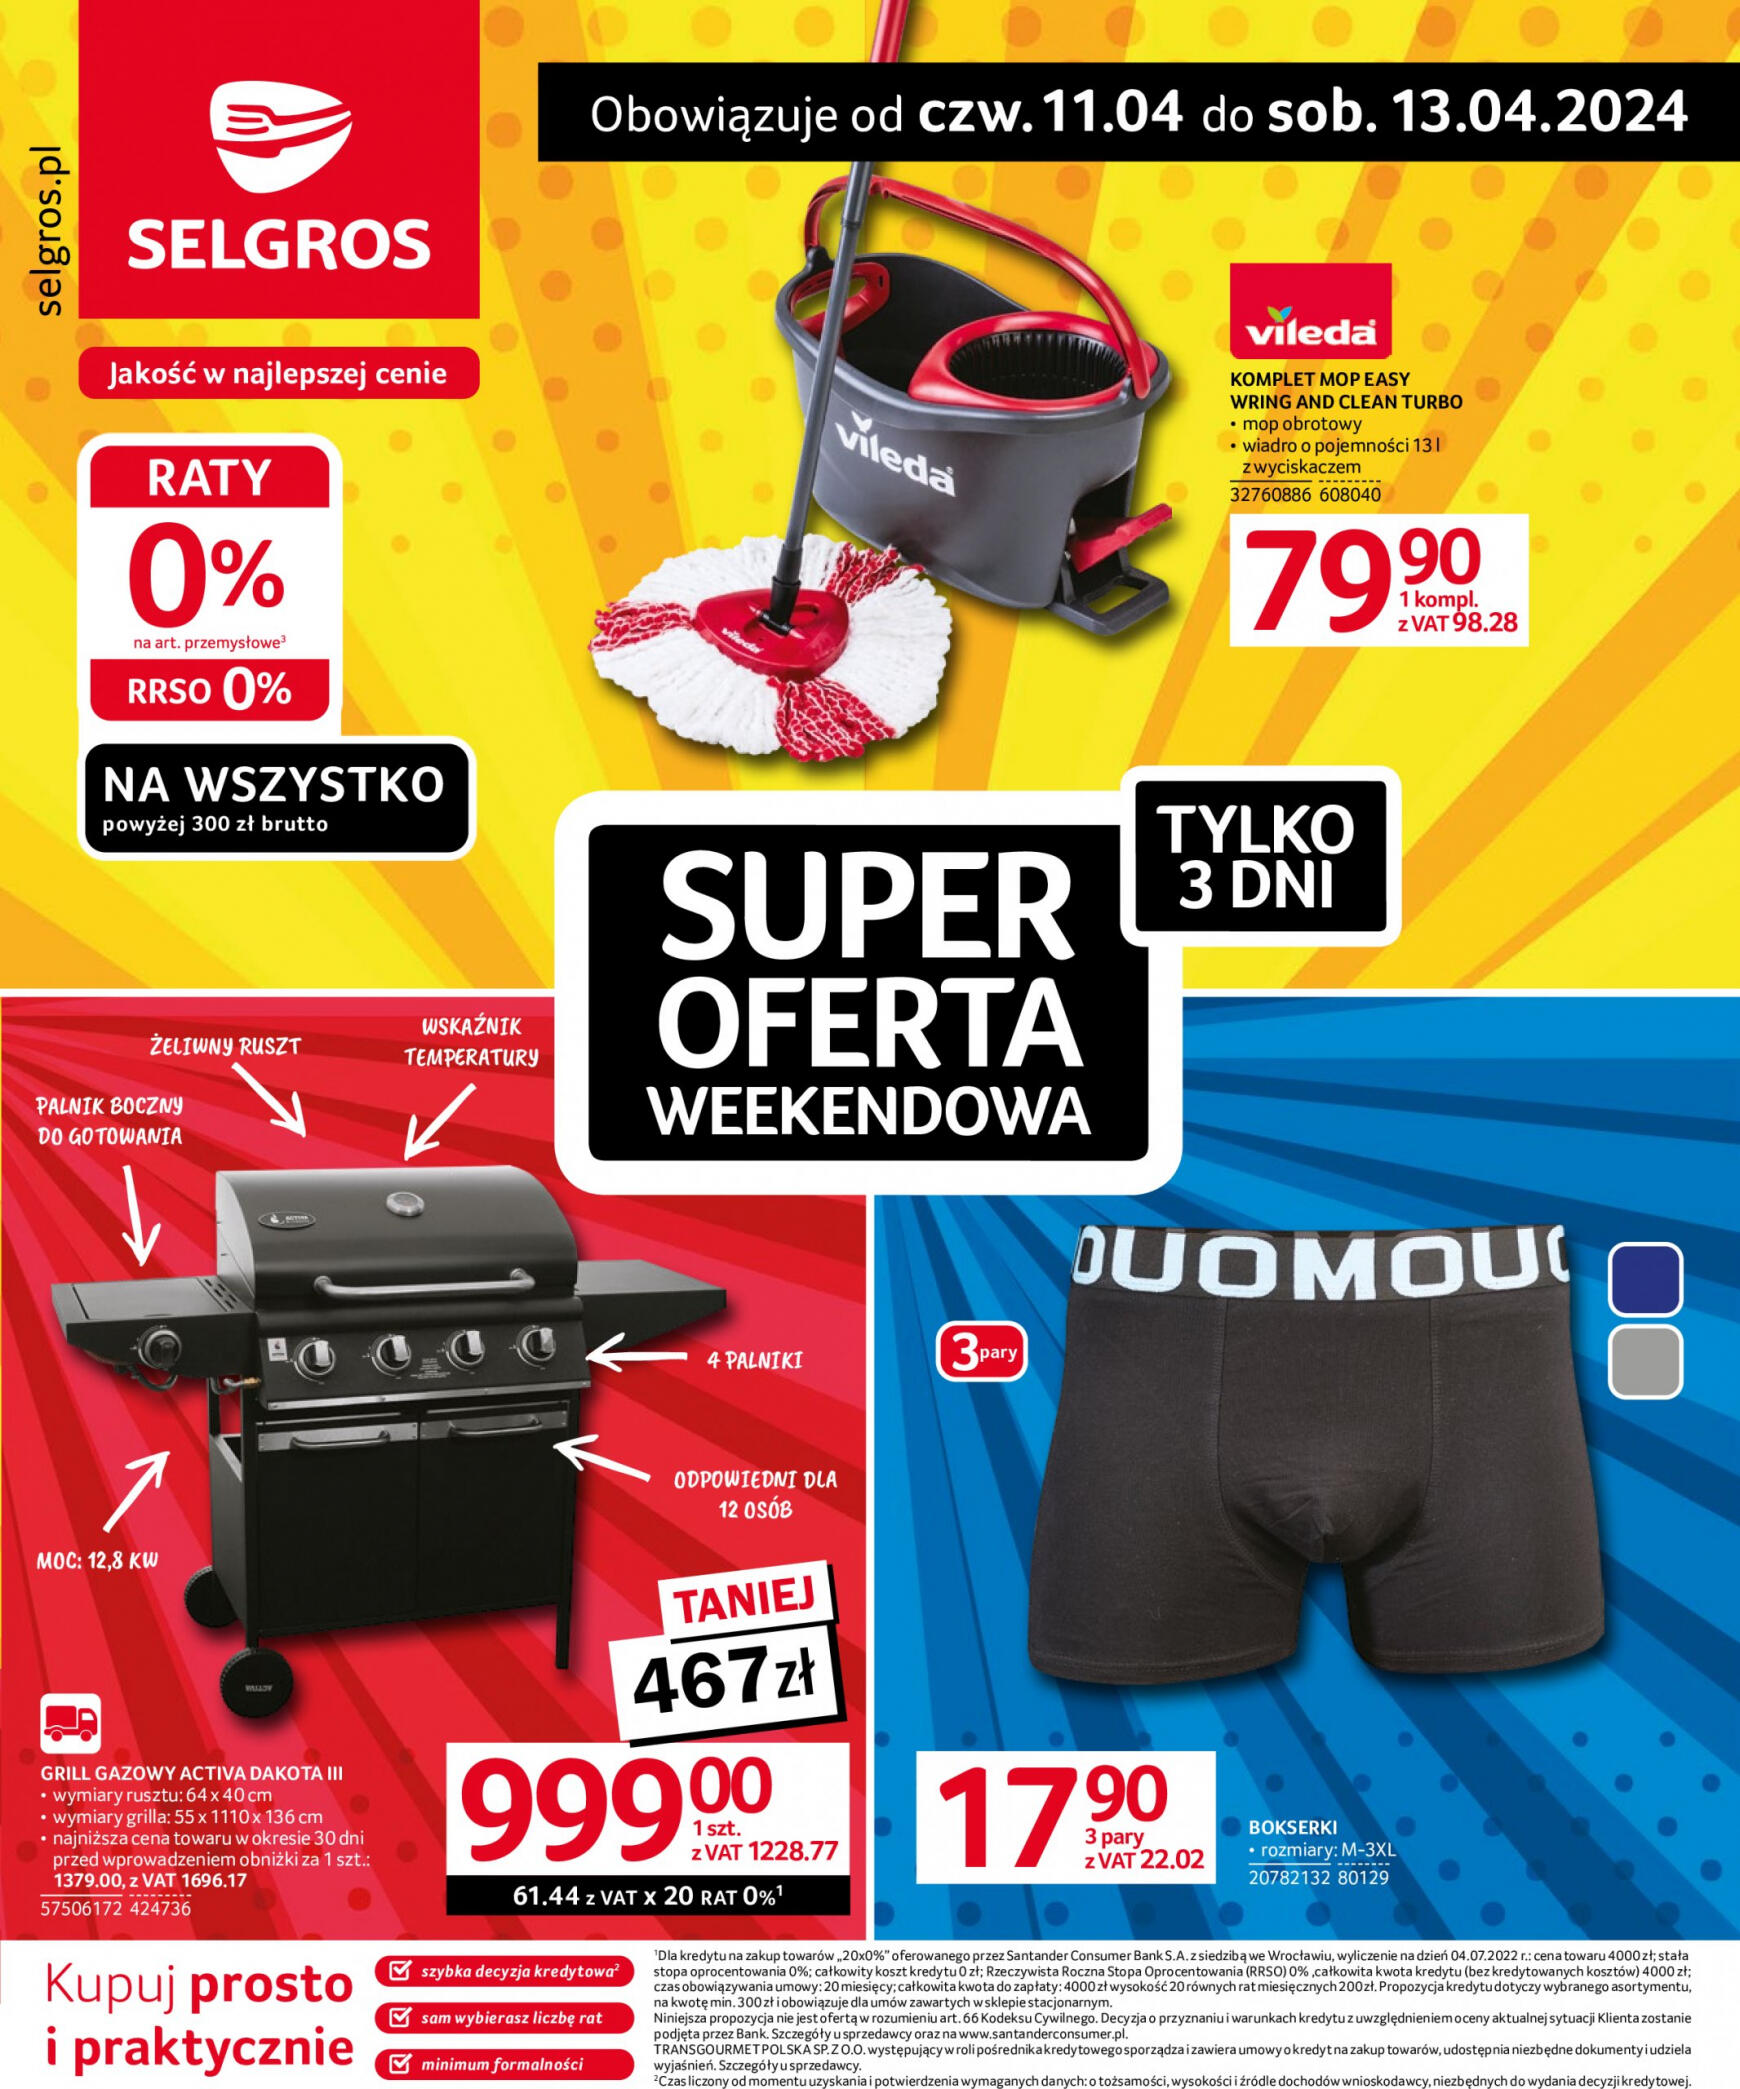 selgros - Selgros cash&carry - Super Oferta Weekendowa gazetka aktualna ważna od 11.04. - 13.04. - page: 1